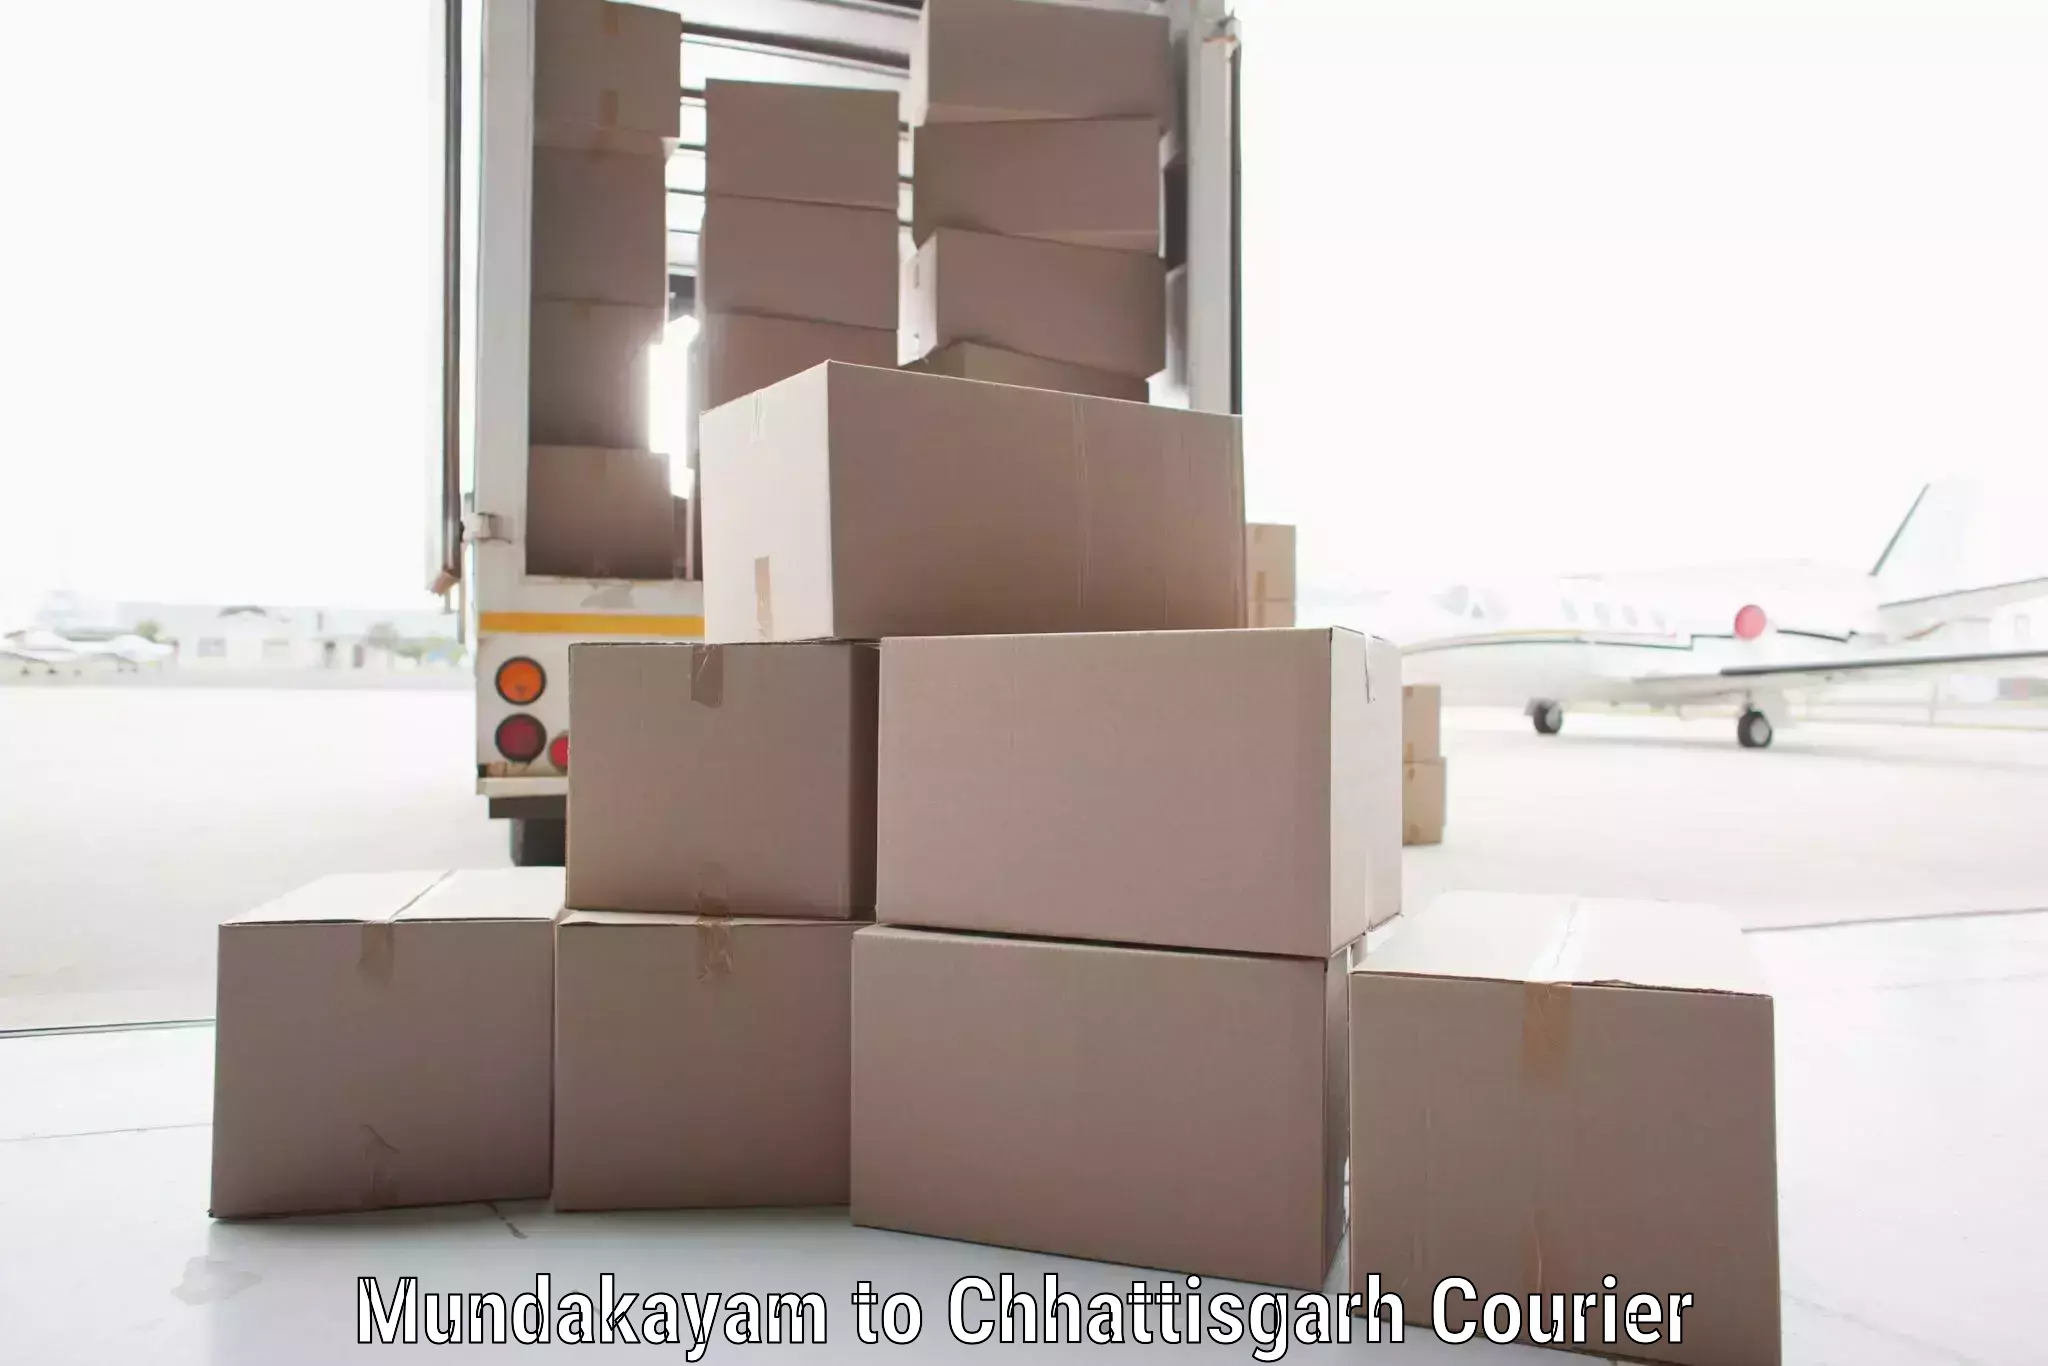 Rapid freight solutions Mundakayam to Chhattisgarh